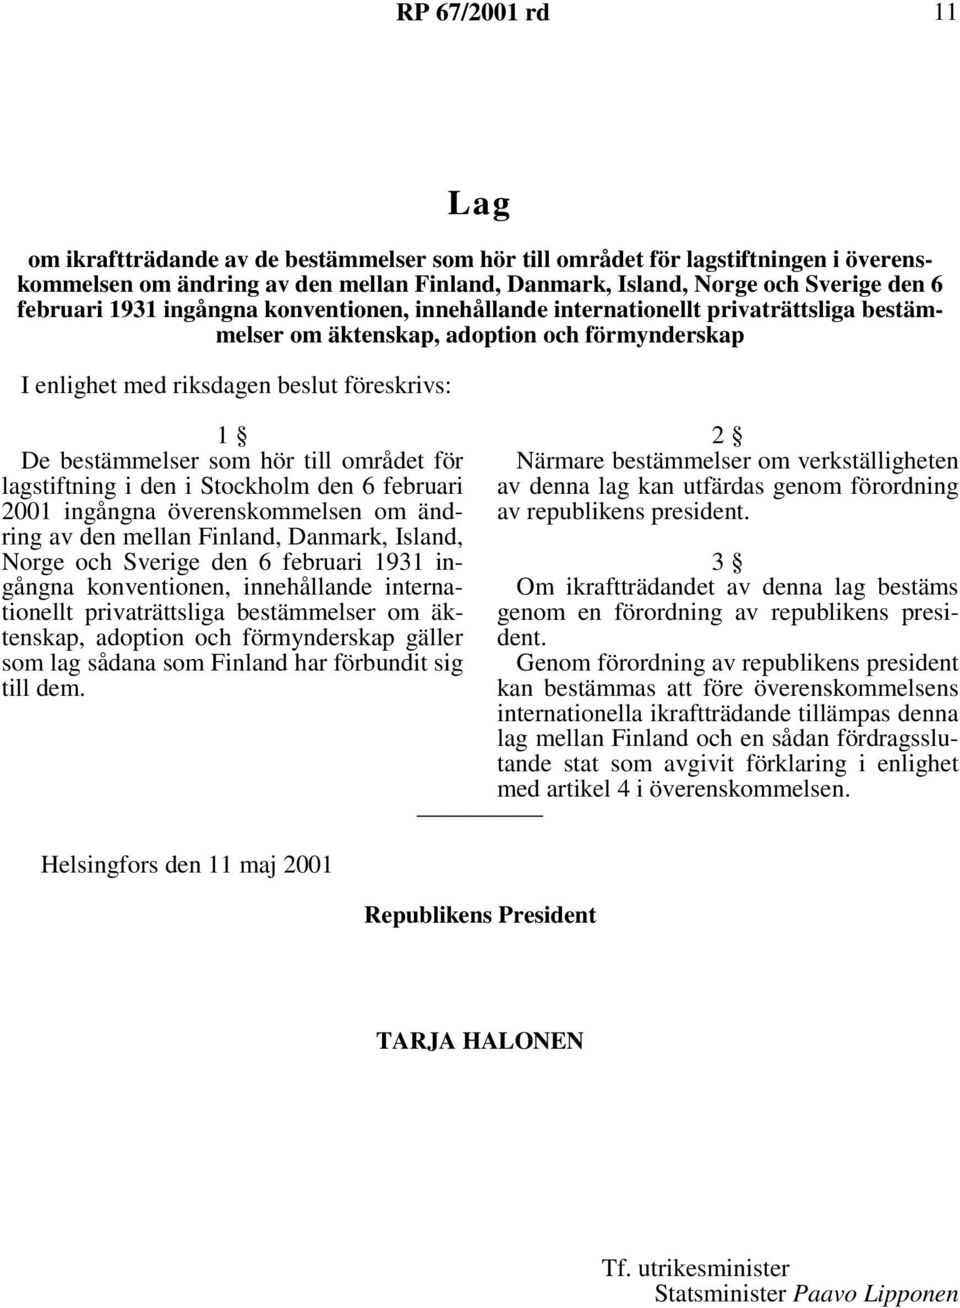 som hör till området för lagstiftning i den i Stockholm den 6 februari 2001 ingångna överenskommelsen om ändring av den mellan Finland, Danmark, Island, Norge och Sverige den 6 februari 1931 ingångna